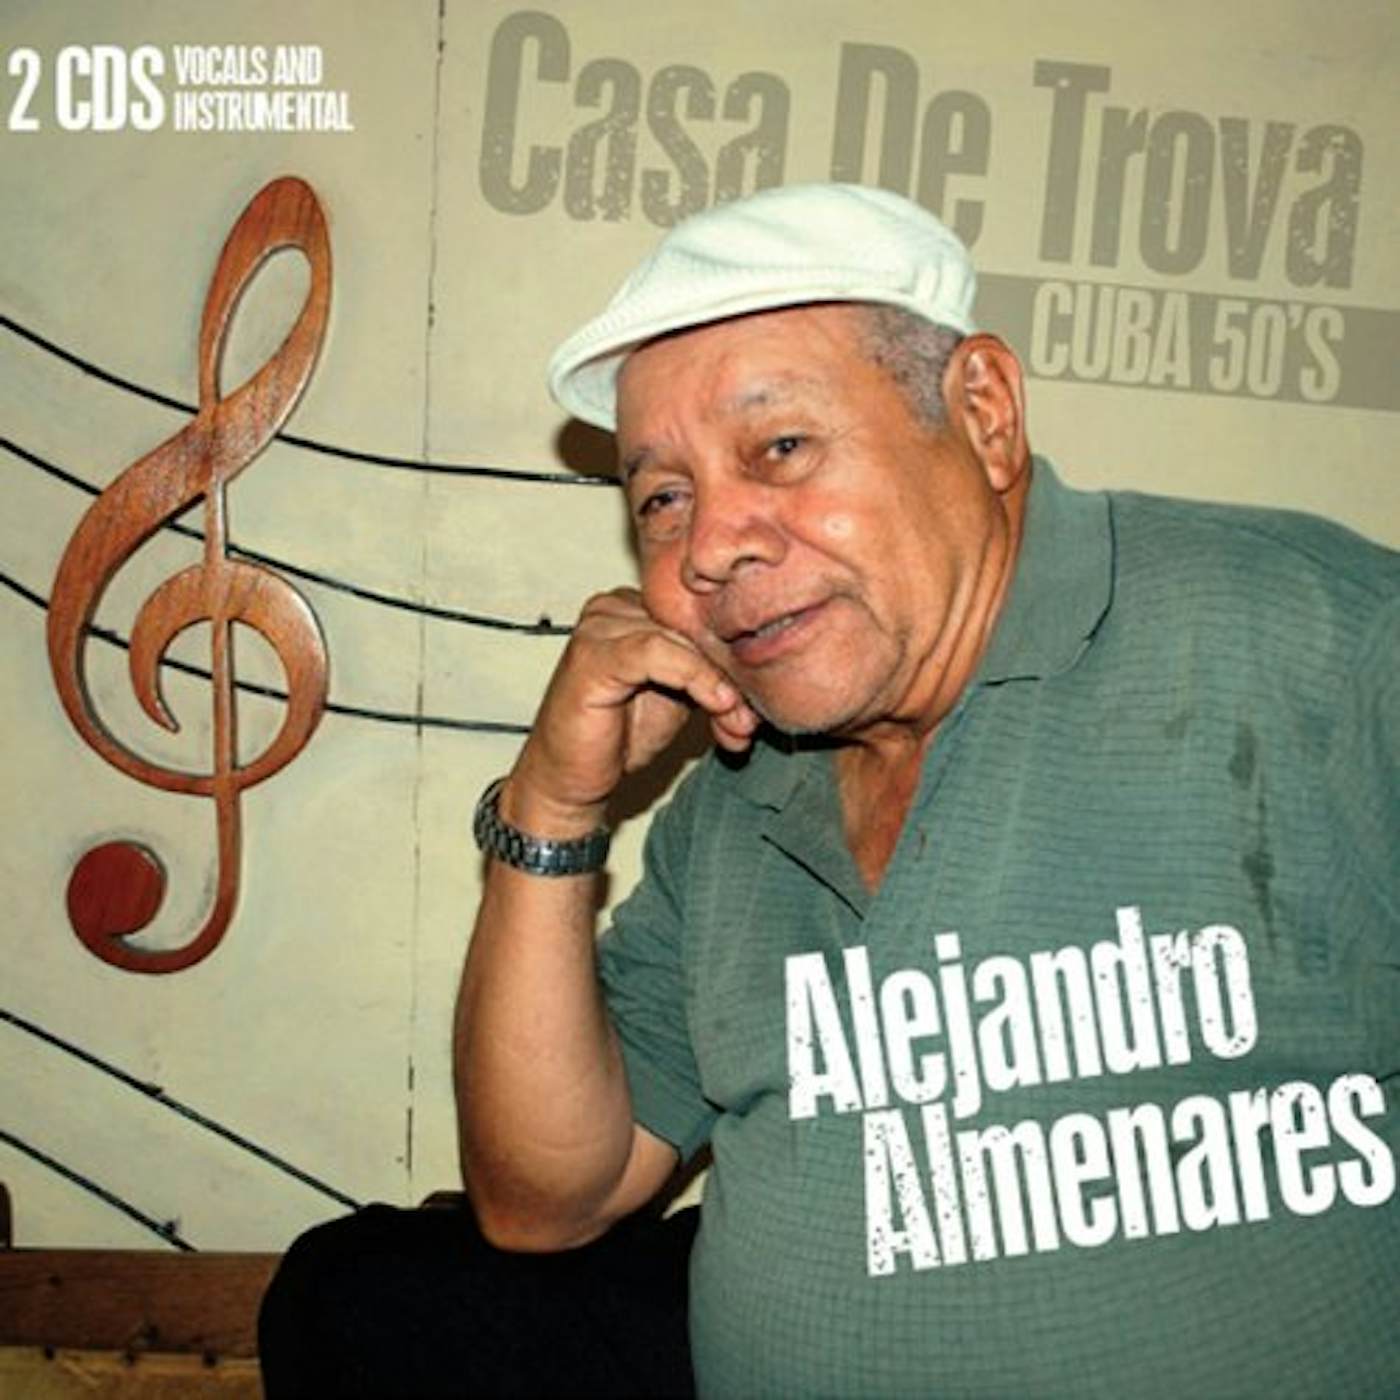 Alejandro Almenares CASA DE TROVA: CUBA 50S CD